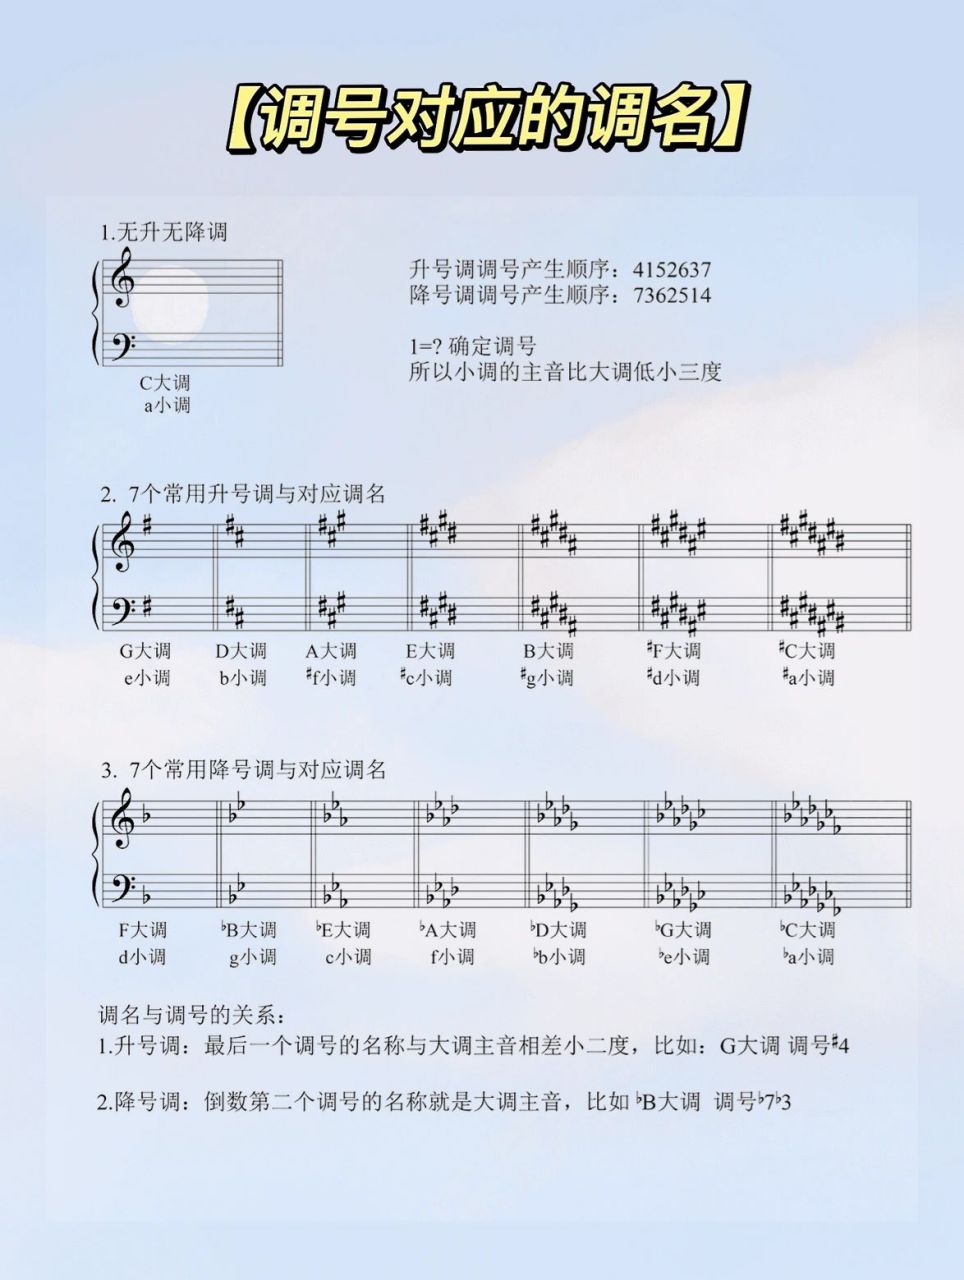 【钢琴乐理】调号对应调名 常用音程 乐理干货总结表,快来收!